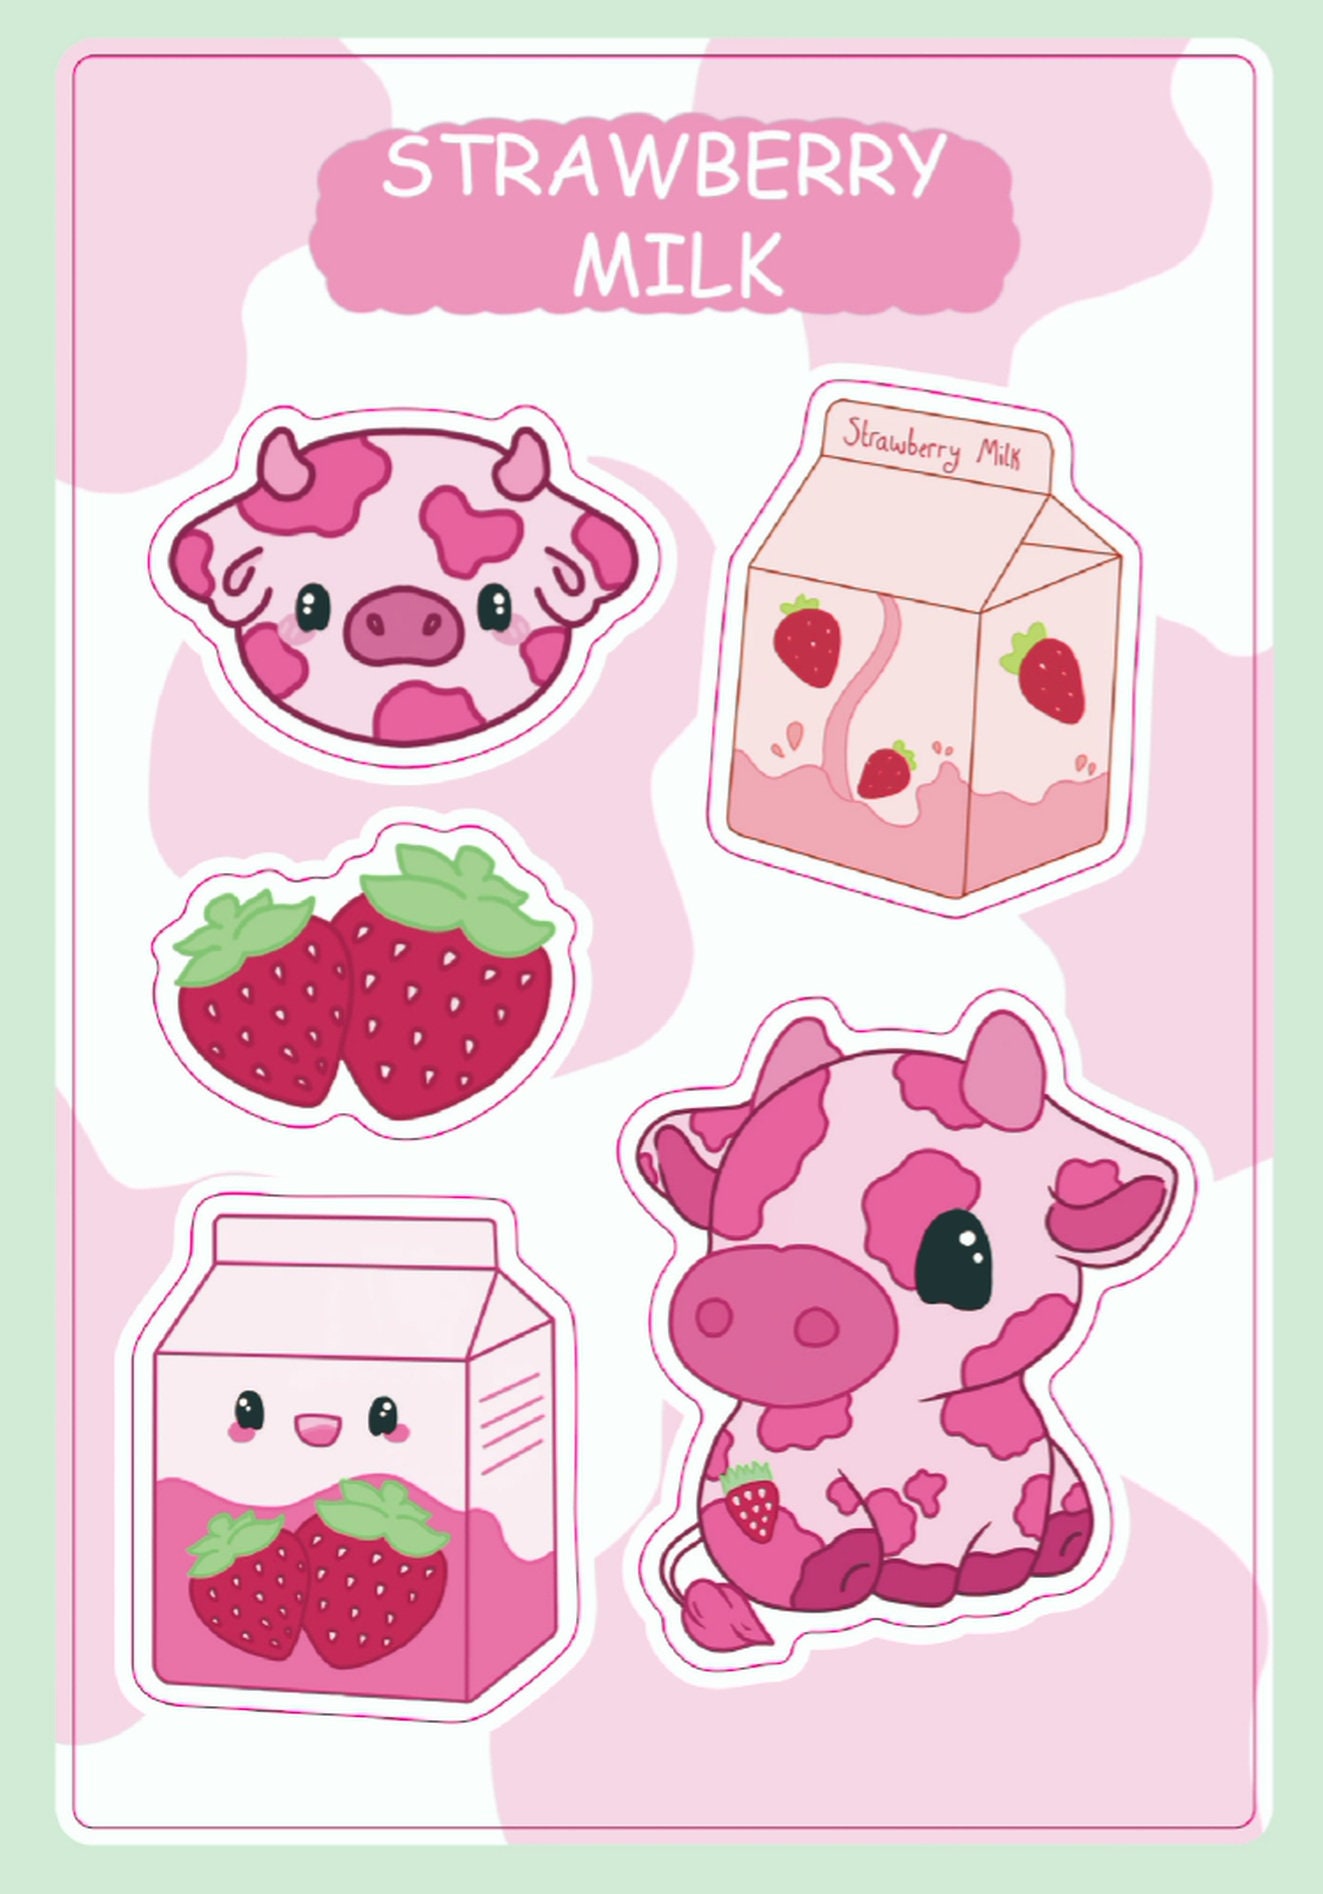 Strawberry Cow Matte Vinyl Sticker Stickers Cute Kawaii Decal Cut